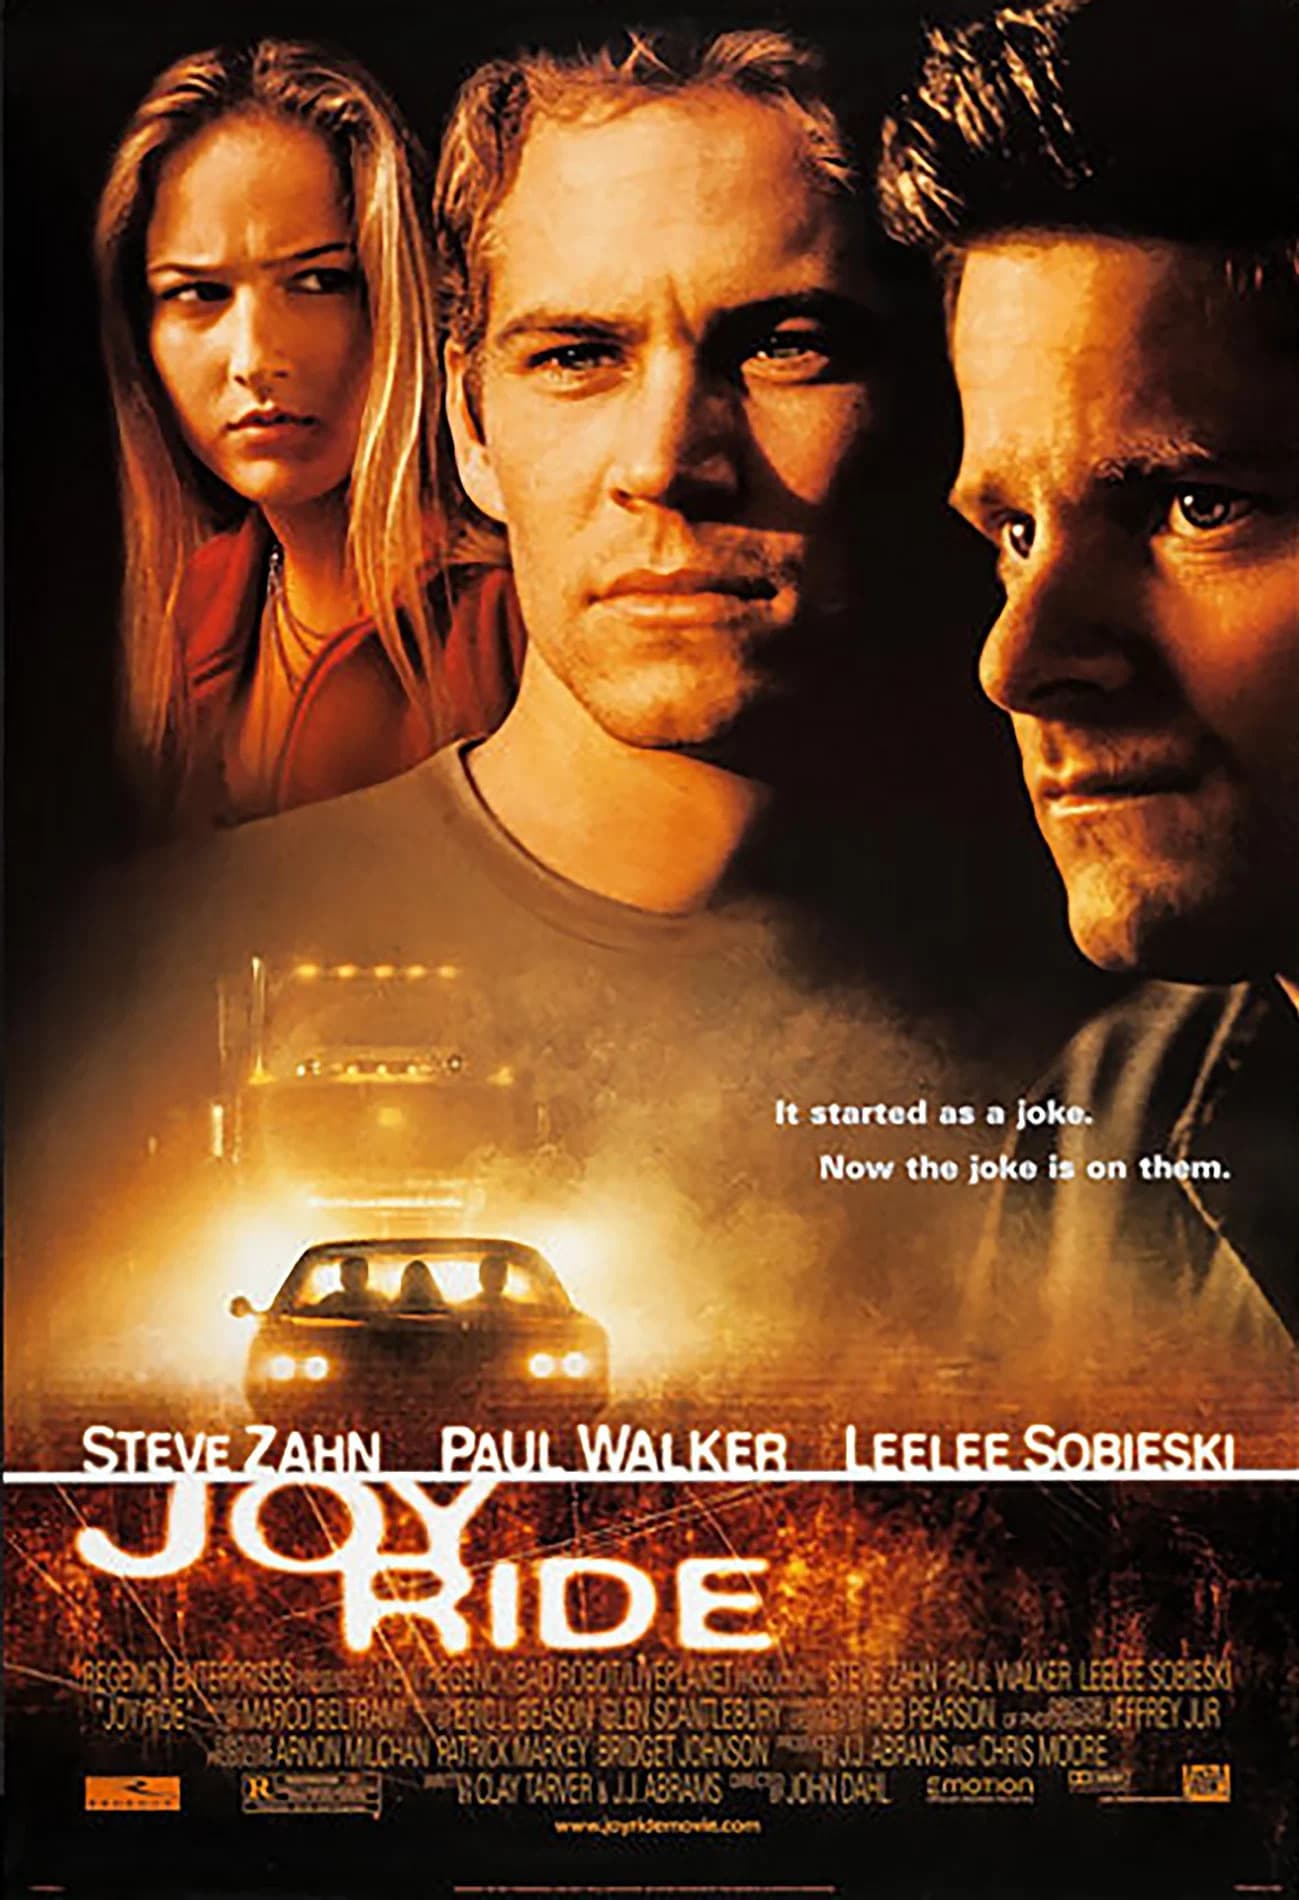 EN - Joy Ride (2001)